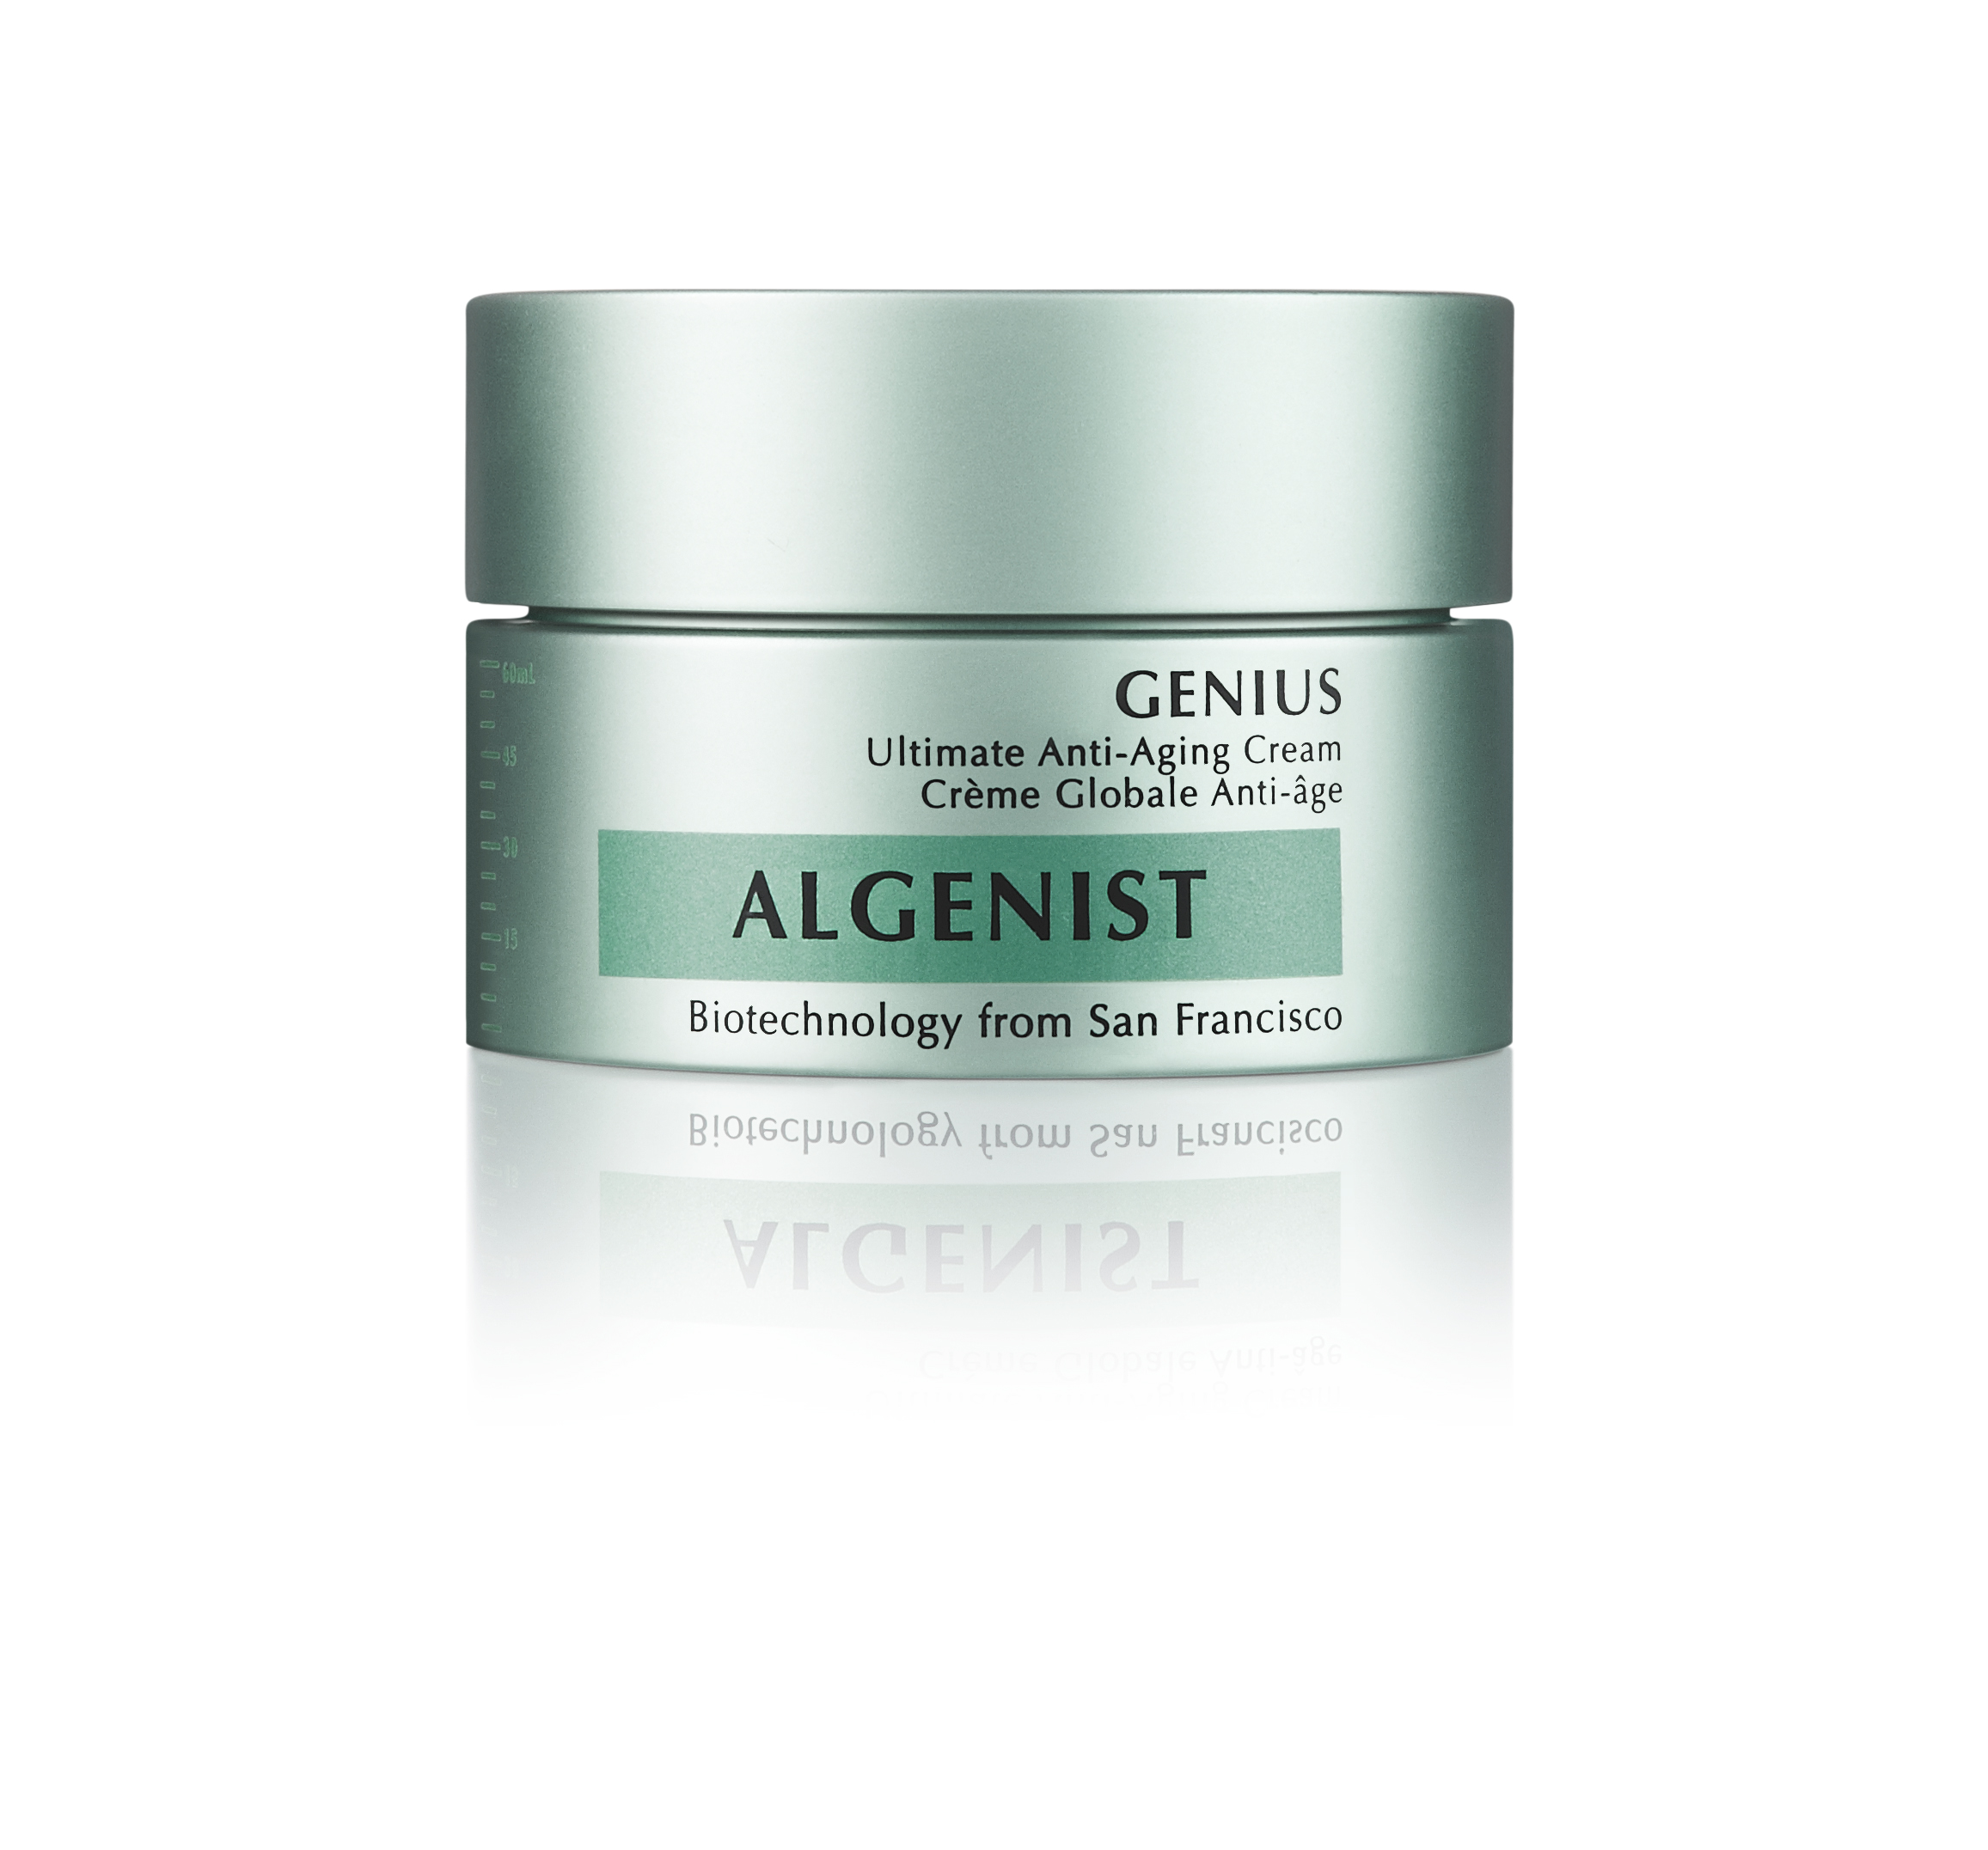  Genius Ultimate Anti-Aging Cream